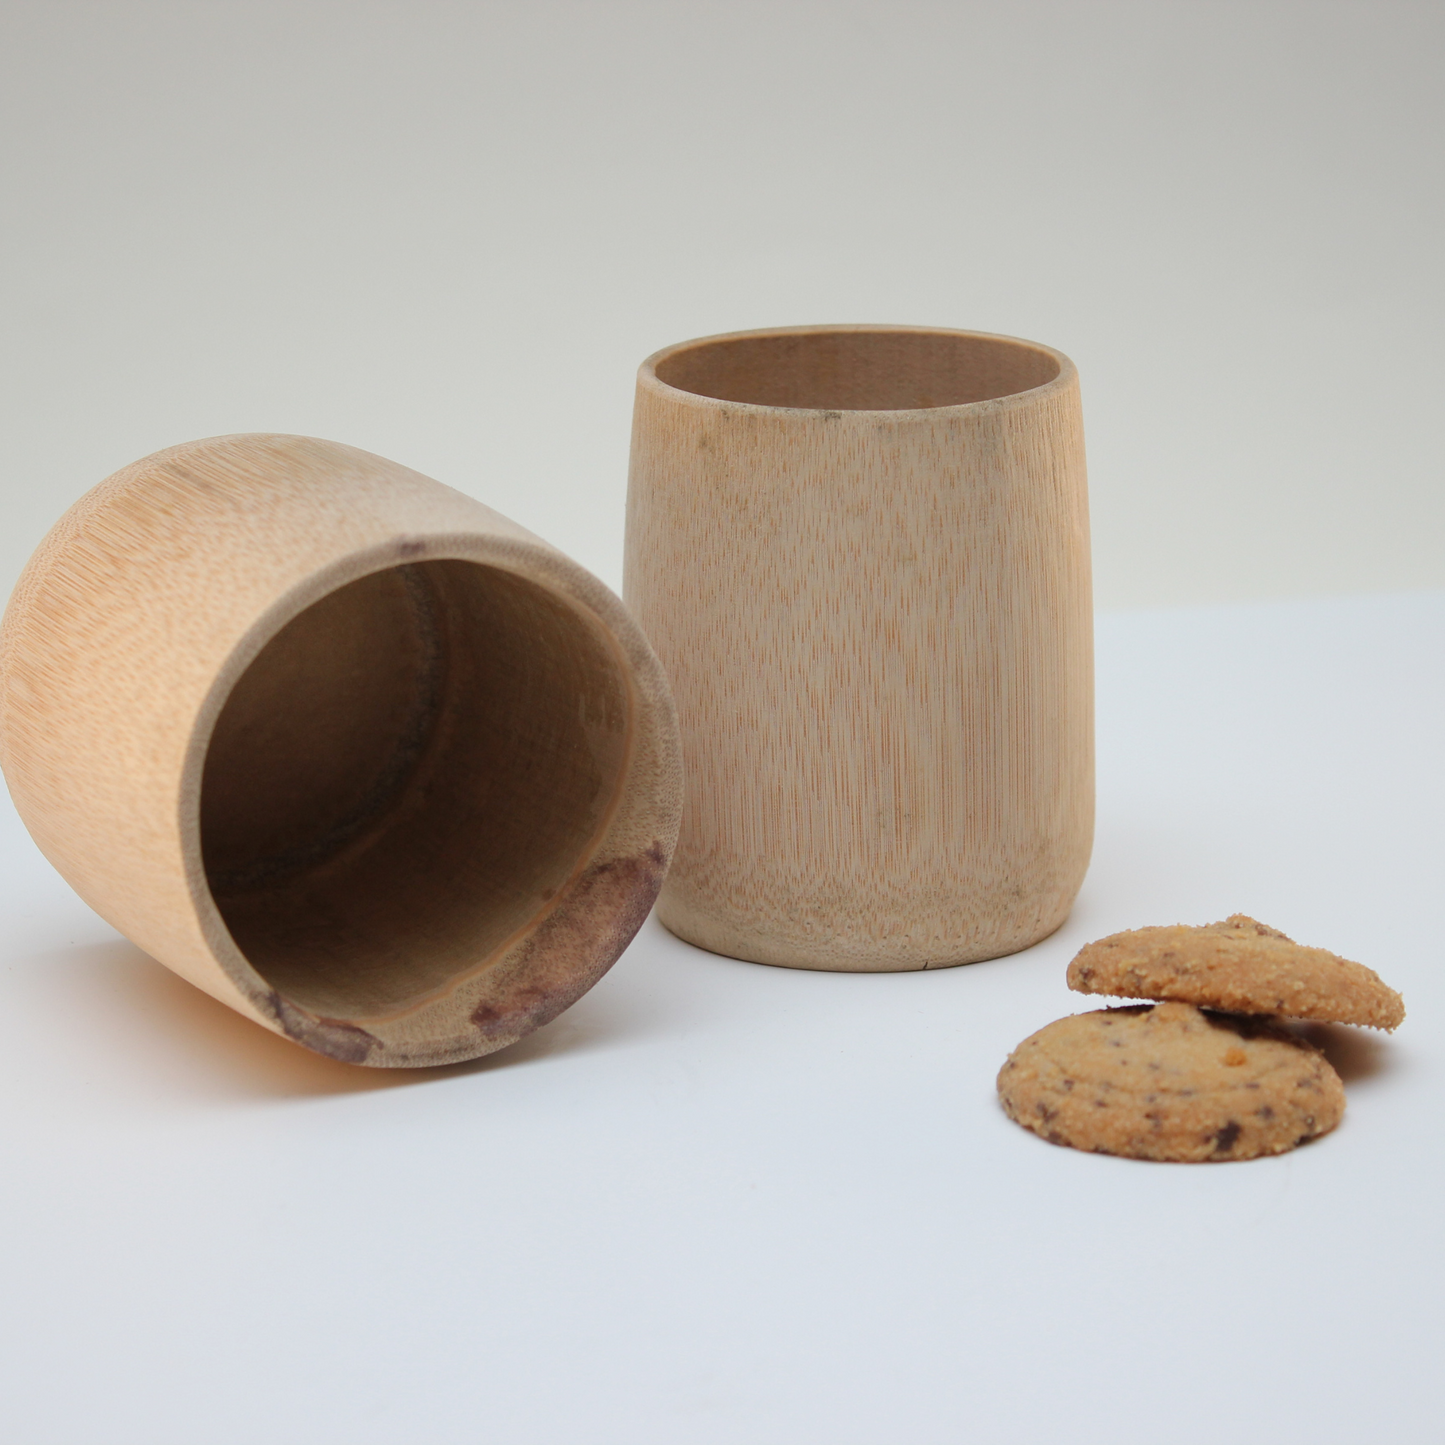 Becher aus Bambus, robust und wiederverwendbar  (6x7,5cm) - BAMBOOJU